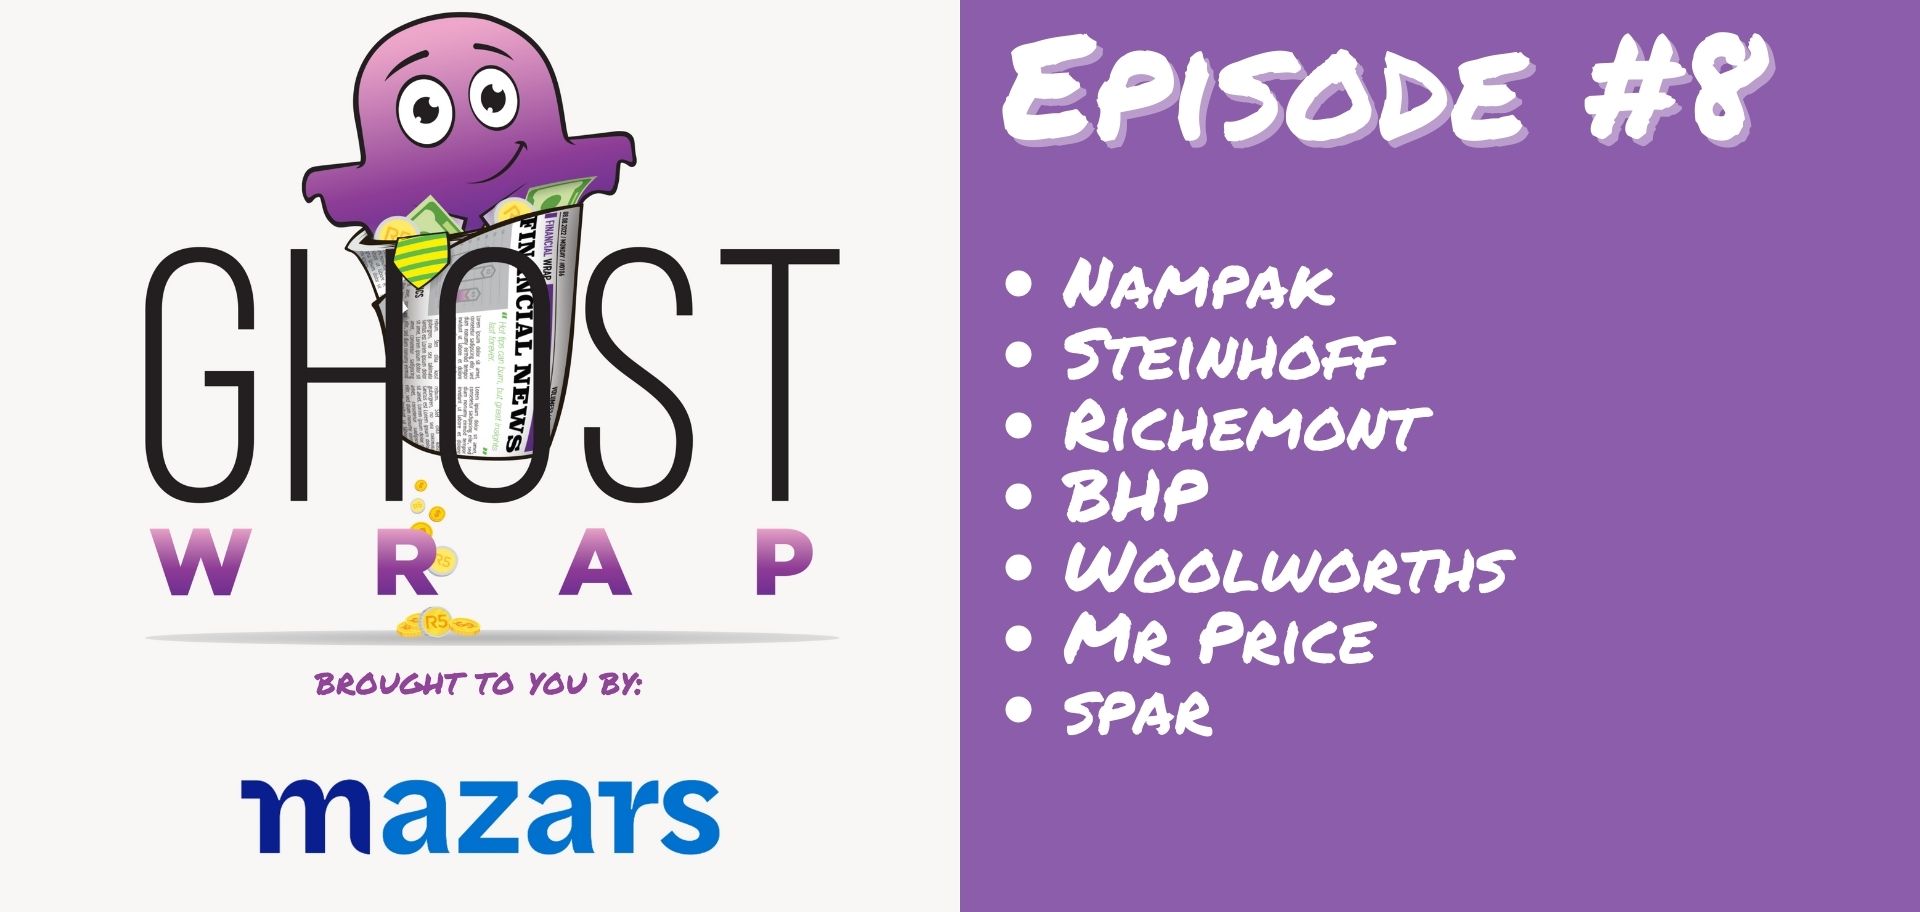 Ghost Wrap #8 (Nampak | Steinhoff | Richemont | BHP | Woolworths | Mr Price | Spar)